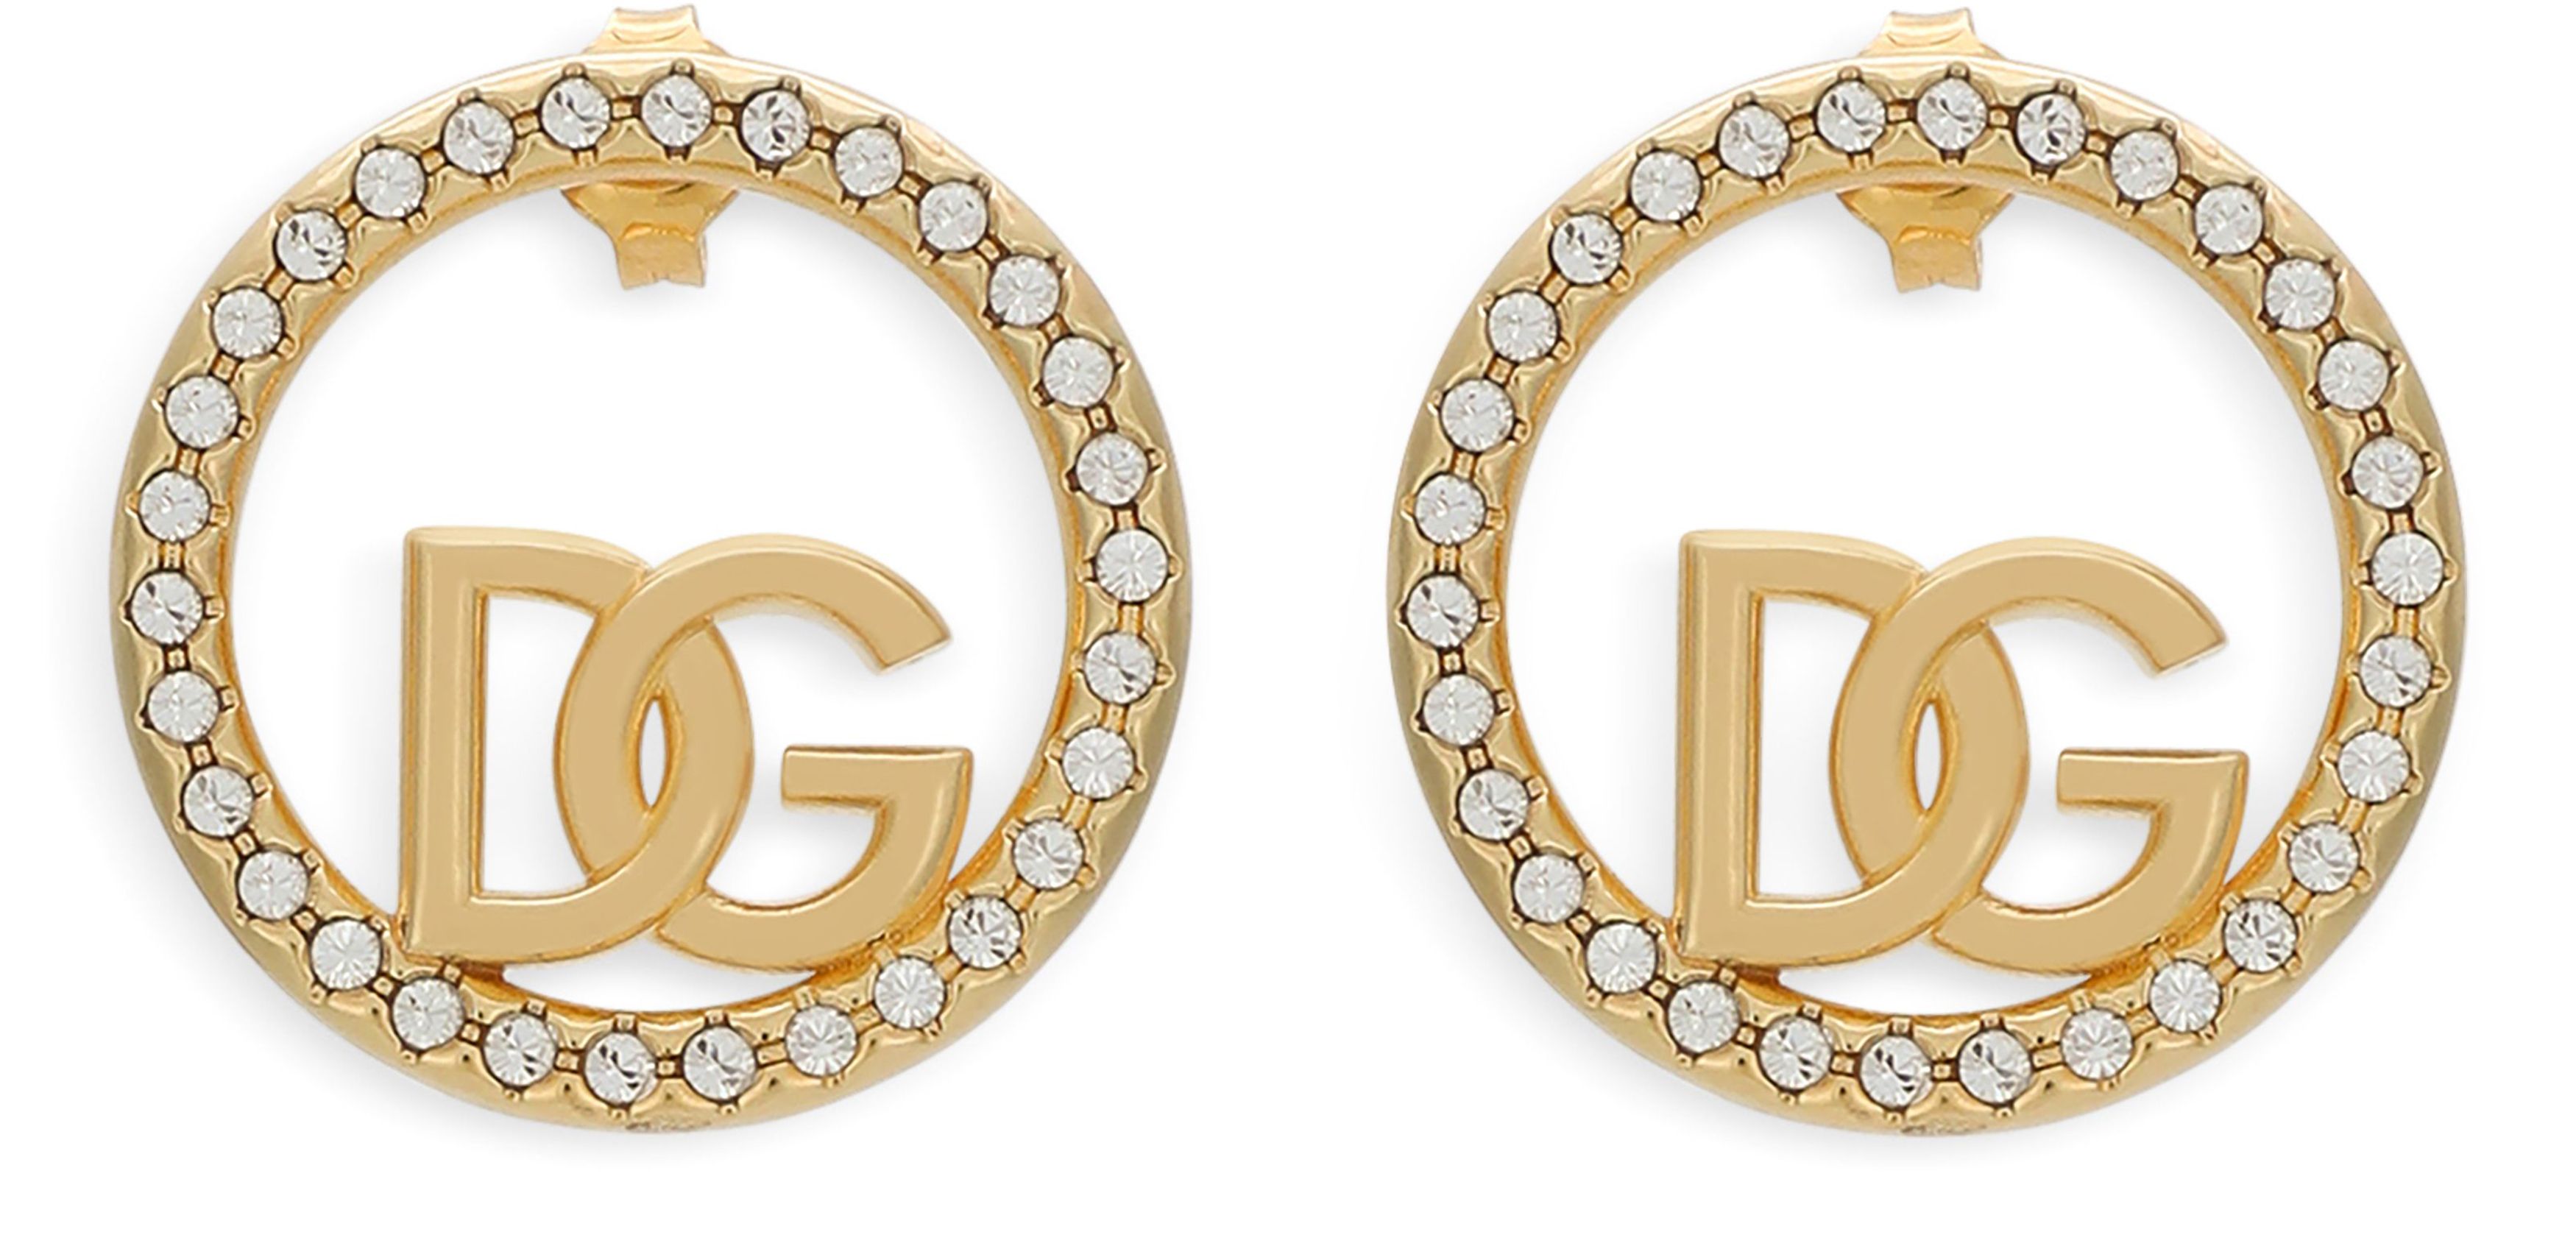 Dolce & Gabbana Hoop earrings with DG logo